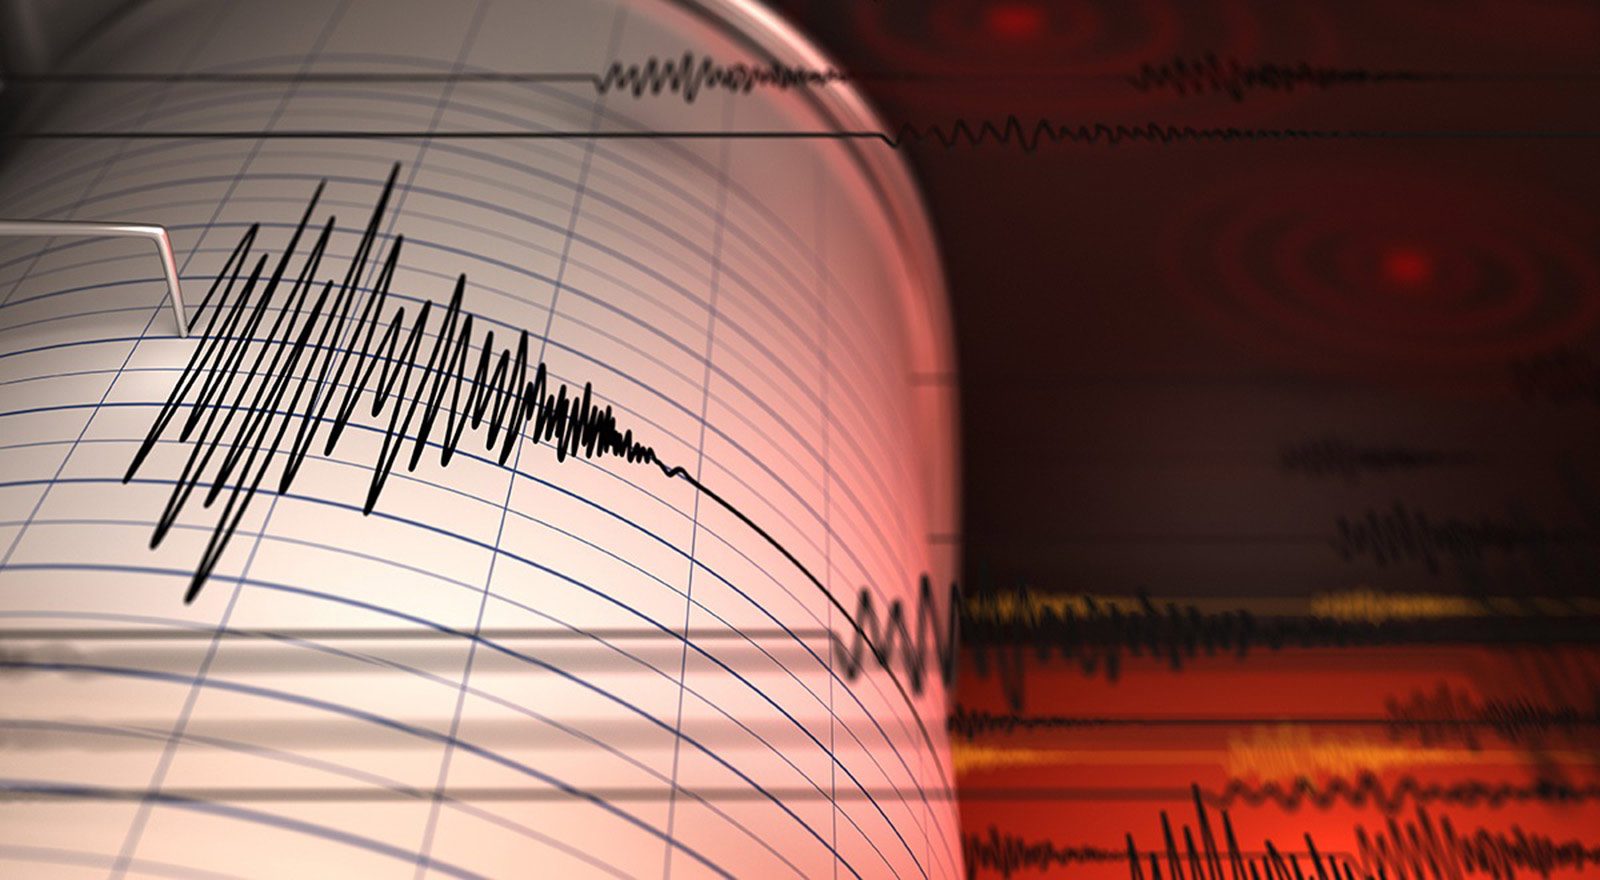 زلزال بقوة 4.6 درجات يضرب ولاية قهرمان مرعش في تركيا